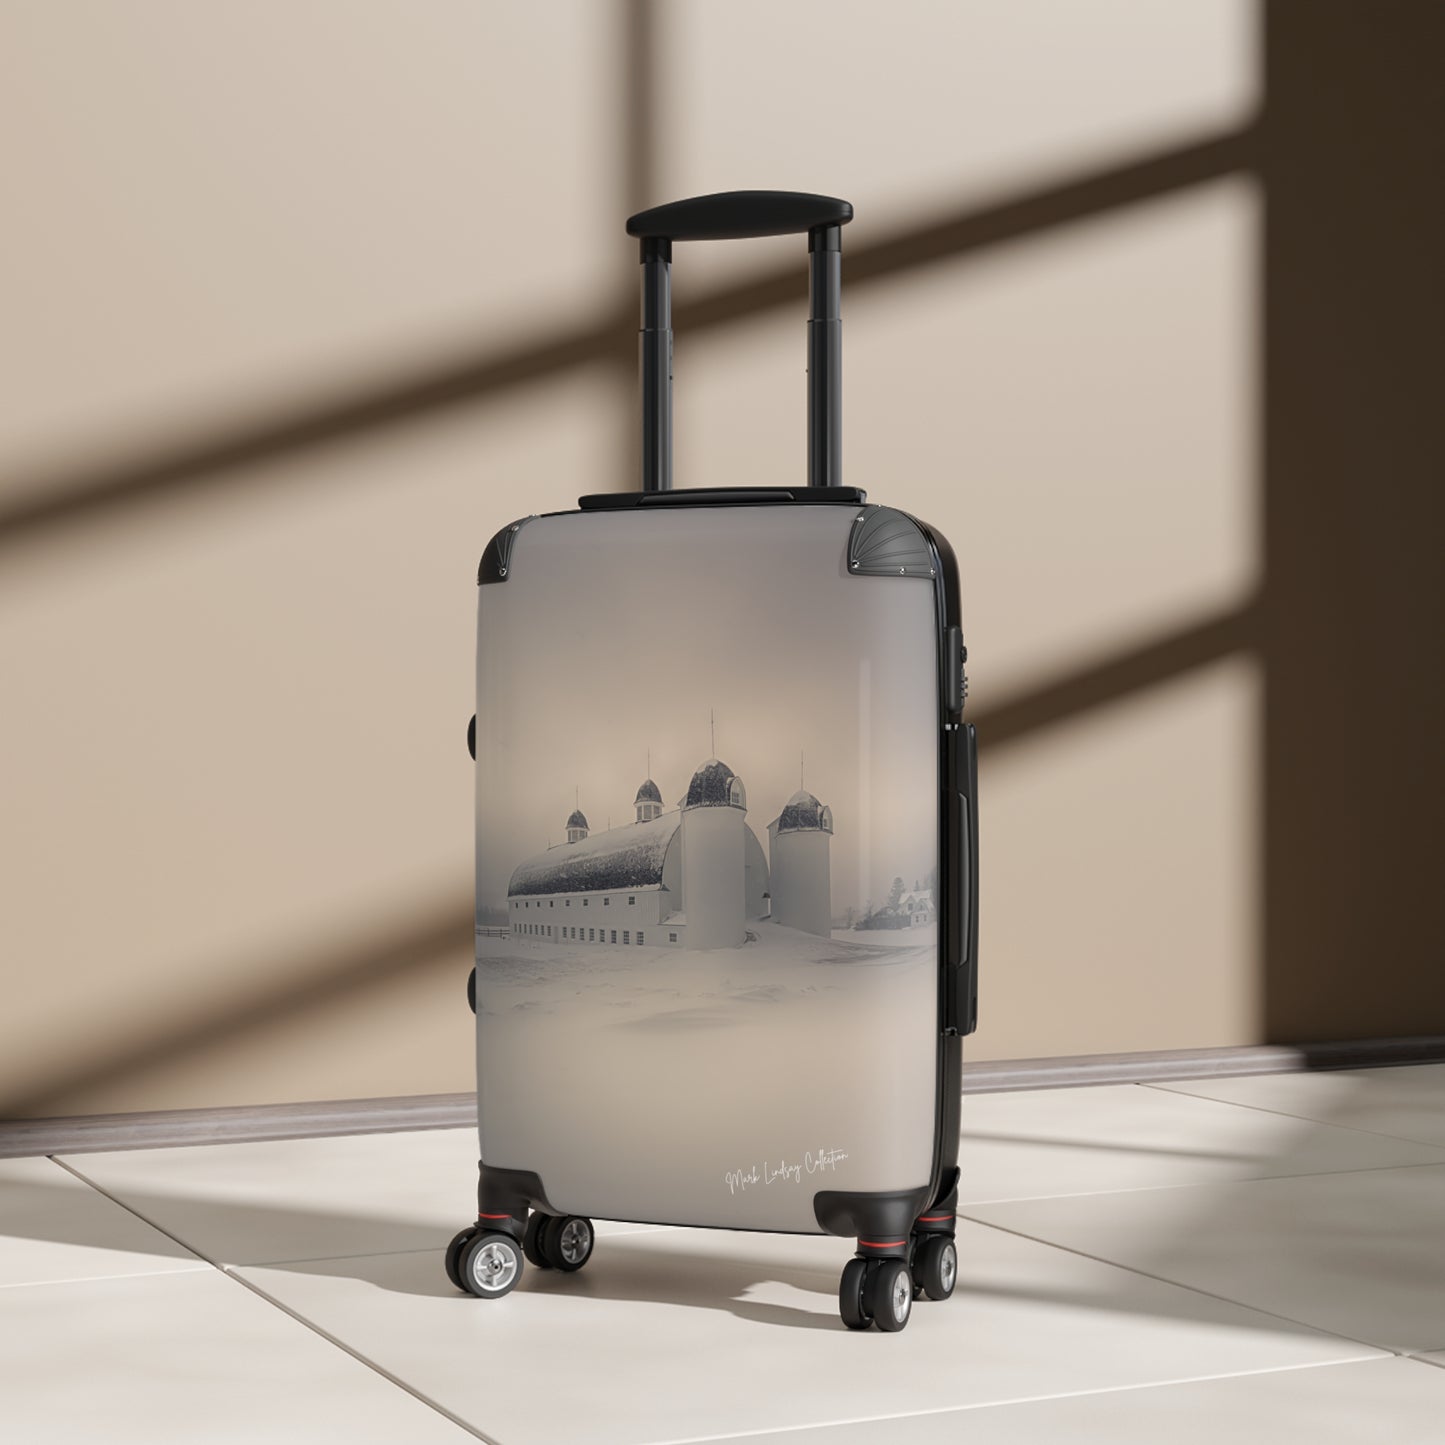 Leelanau's Grace and Elegance Art Luggage